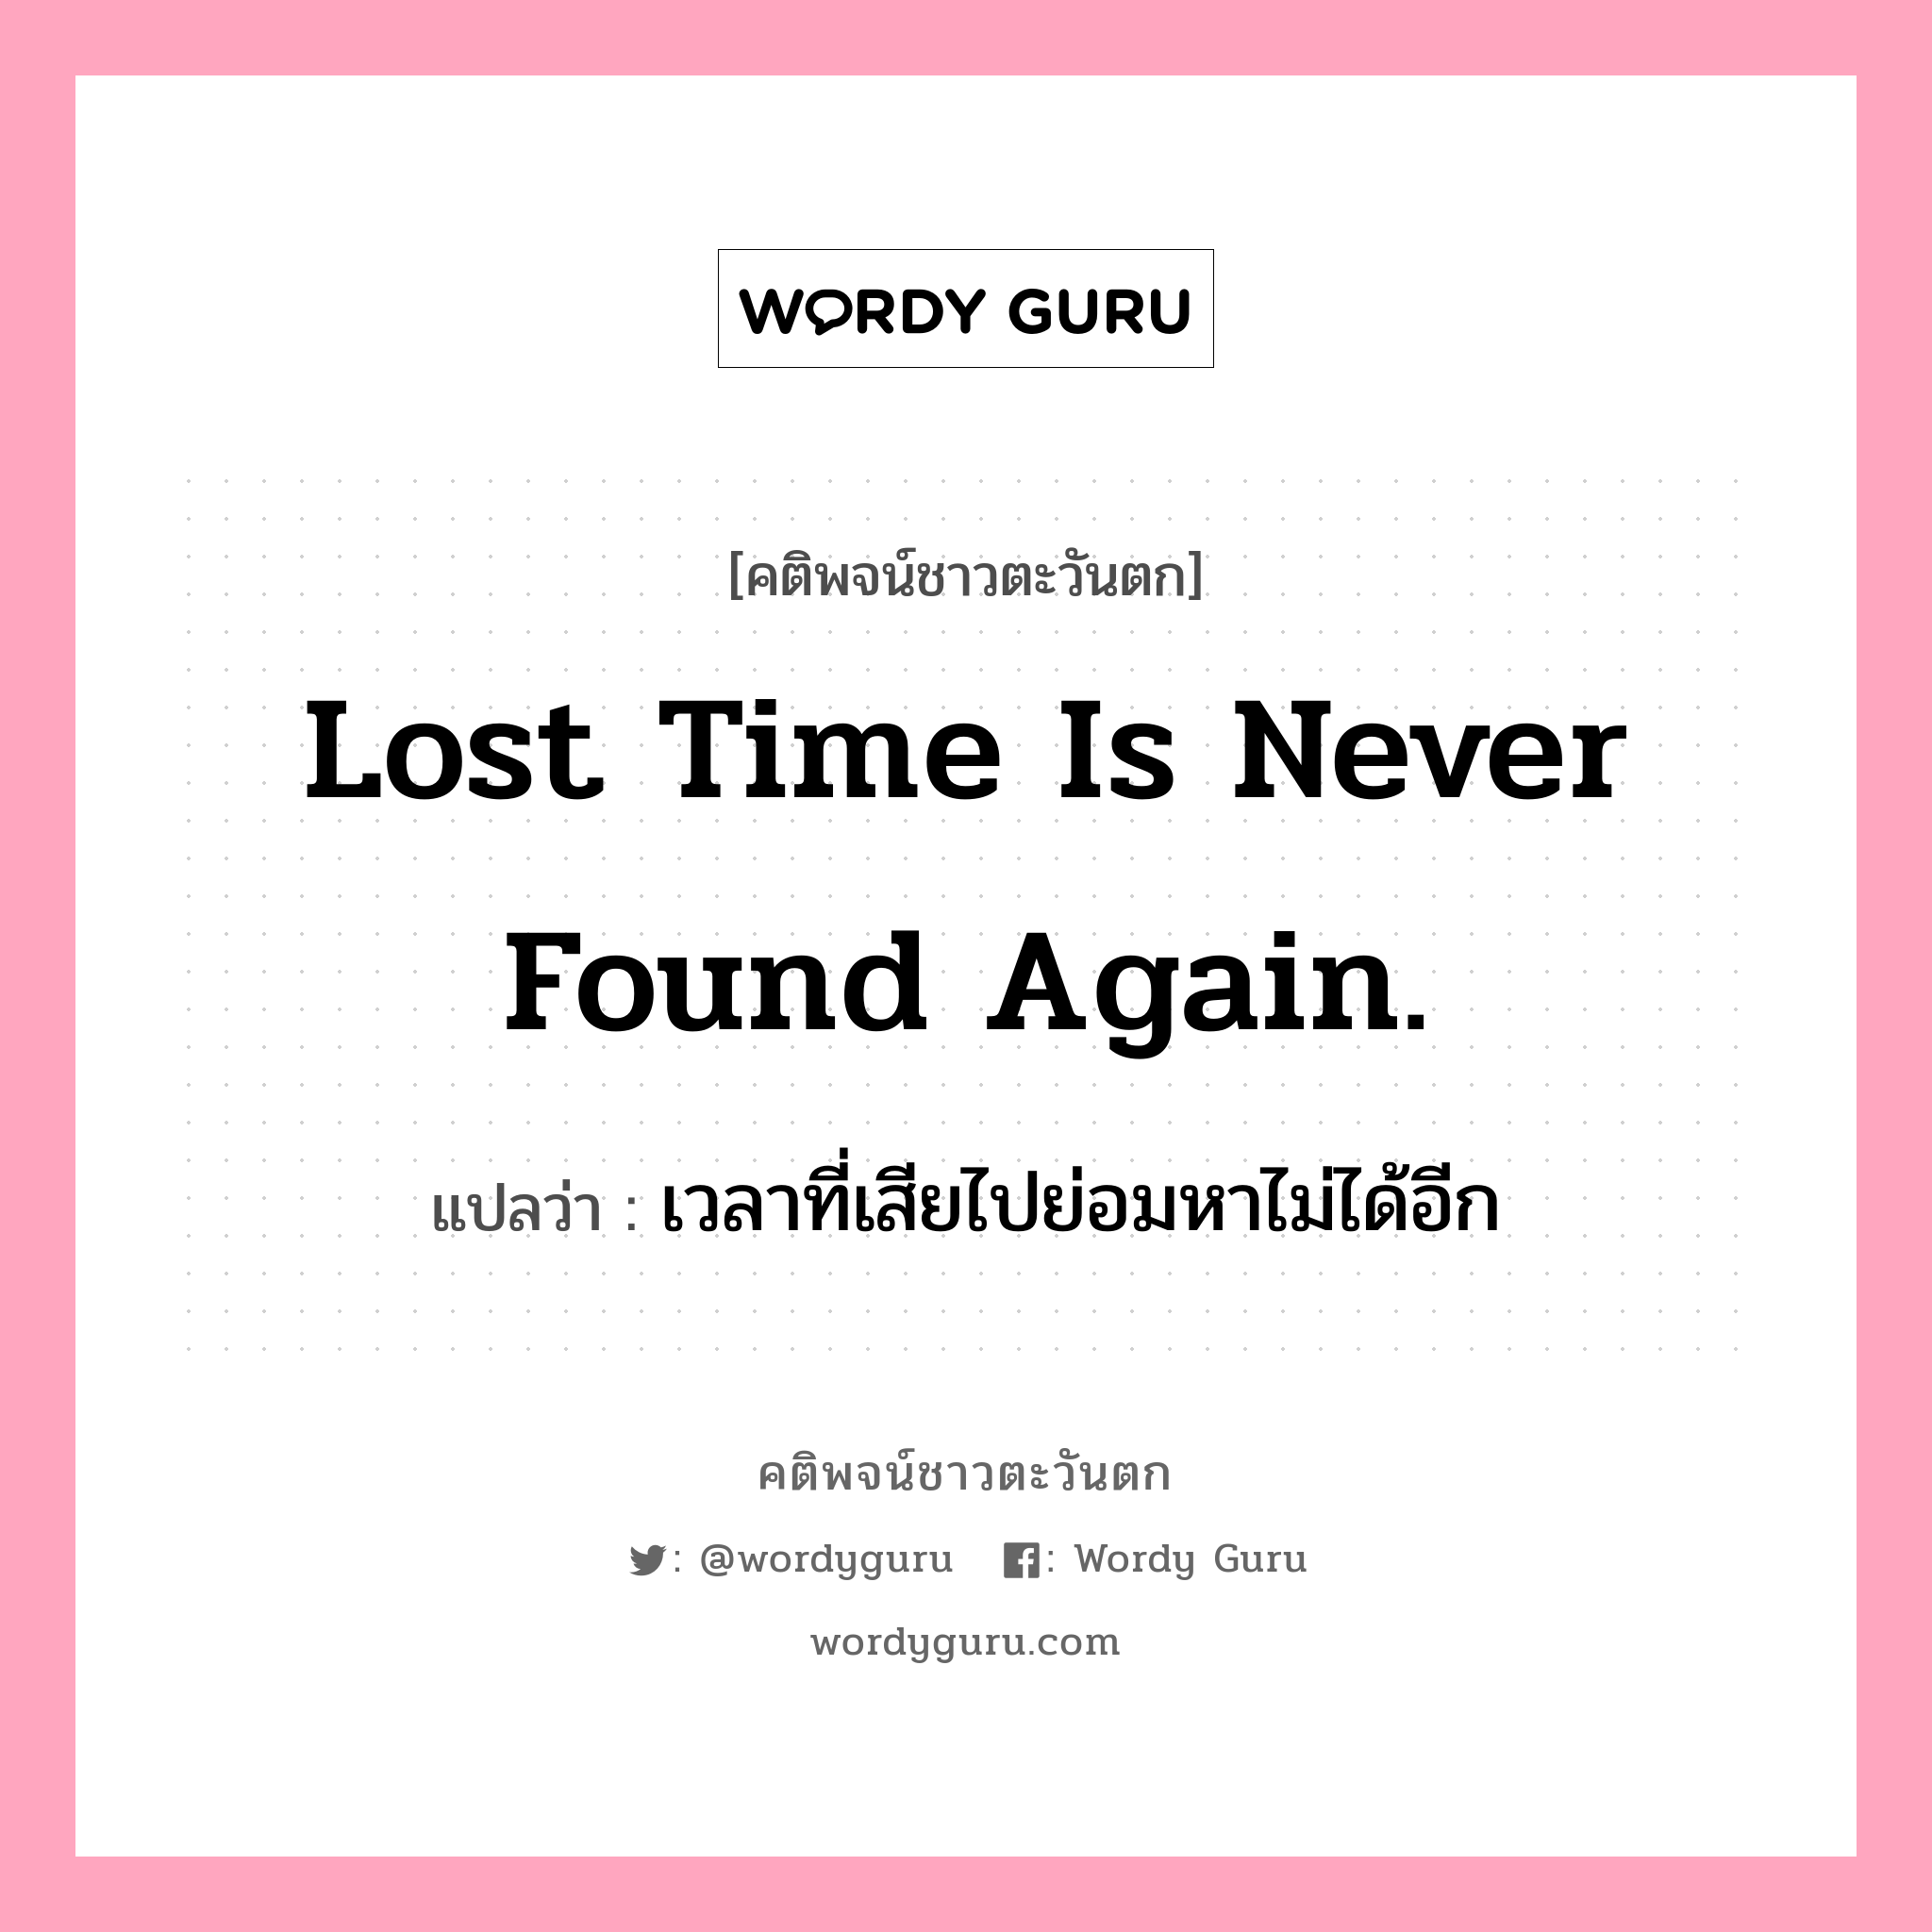 Lost time is never found again., คติพจน์ชาวตะวันตก Lost time is never found again. แปลว่า เวลาที่เสียไปย่อมหาไม่ได้อีก